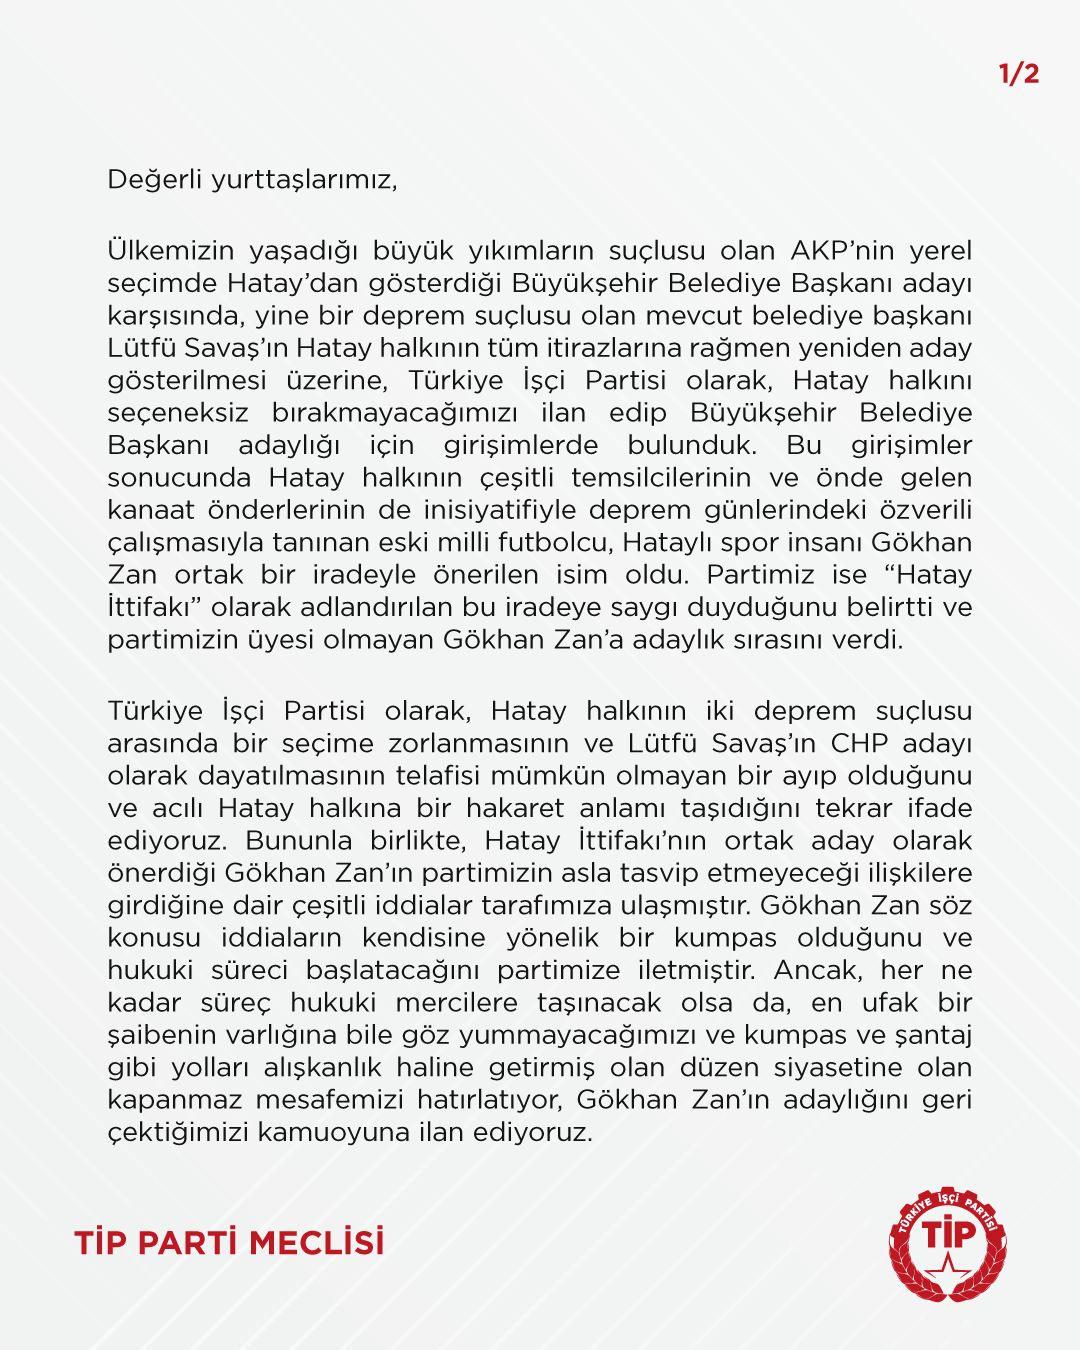 TİP'ten Hatay kararı! Gökhan Zan'dan desteği çektiler! Zan'dan rest: Çekilmedim!